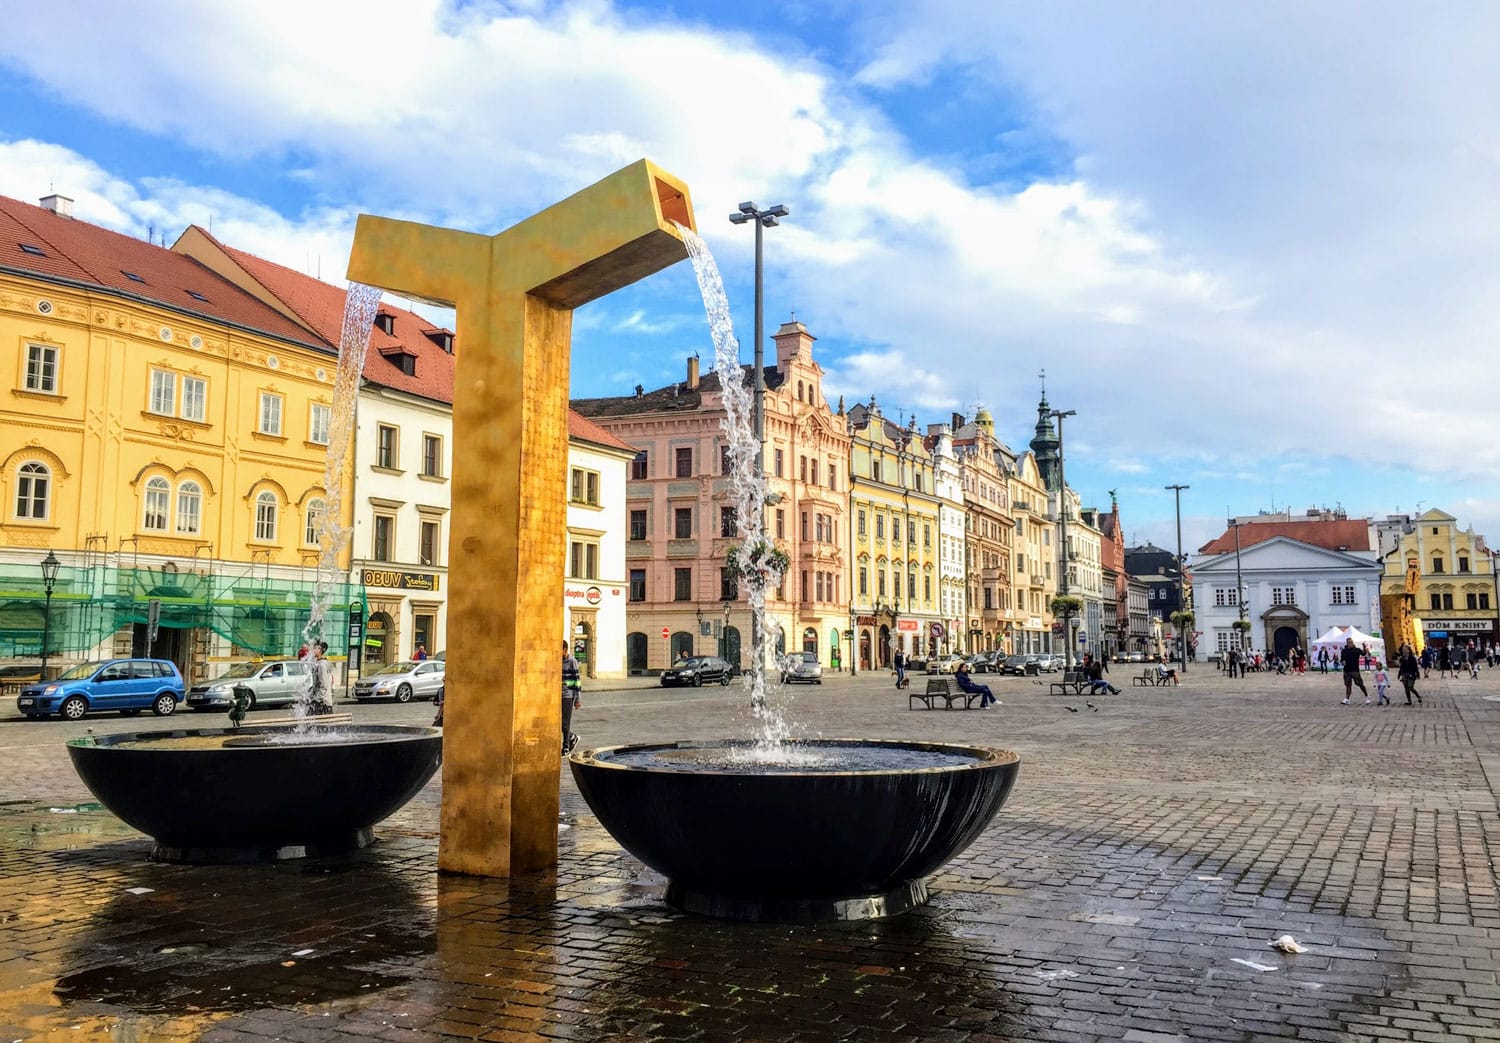 Fountain in Pilsen, Czech Republic